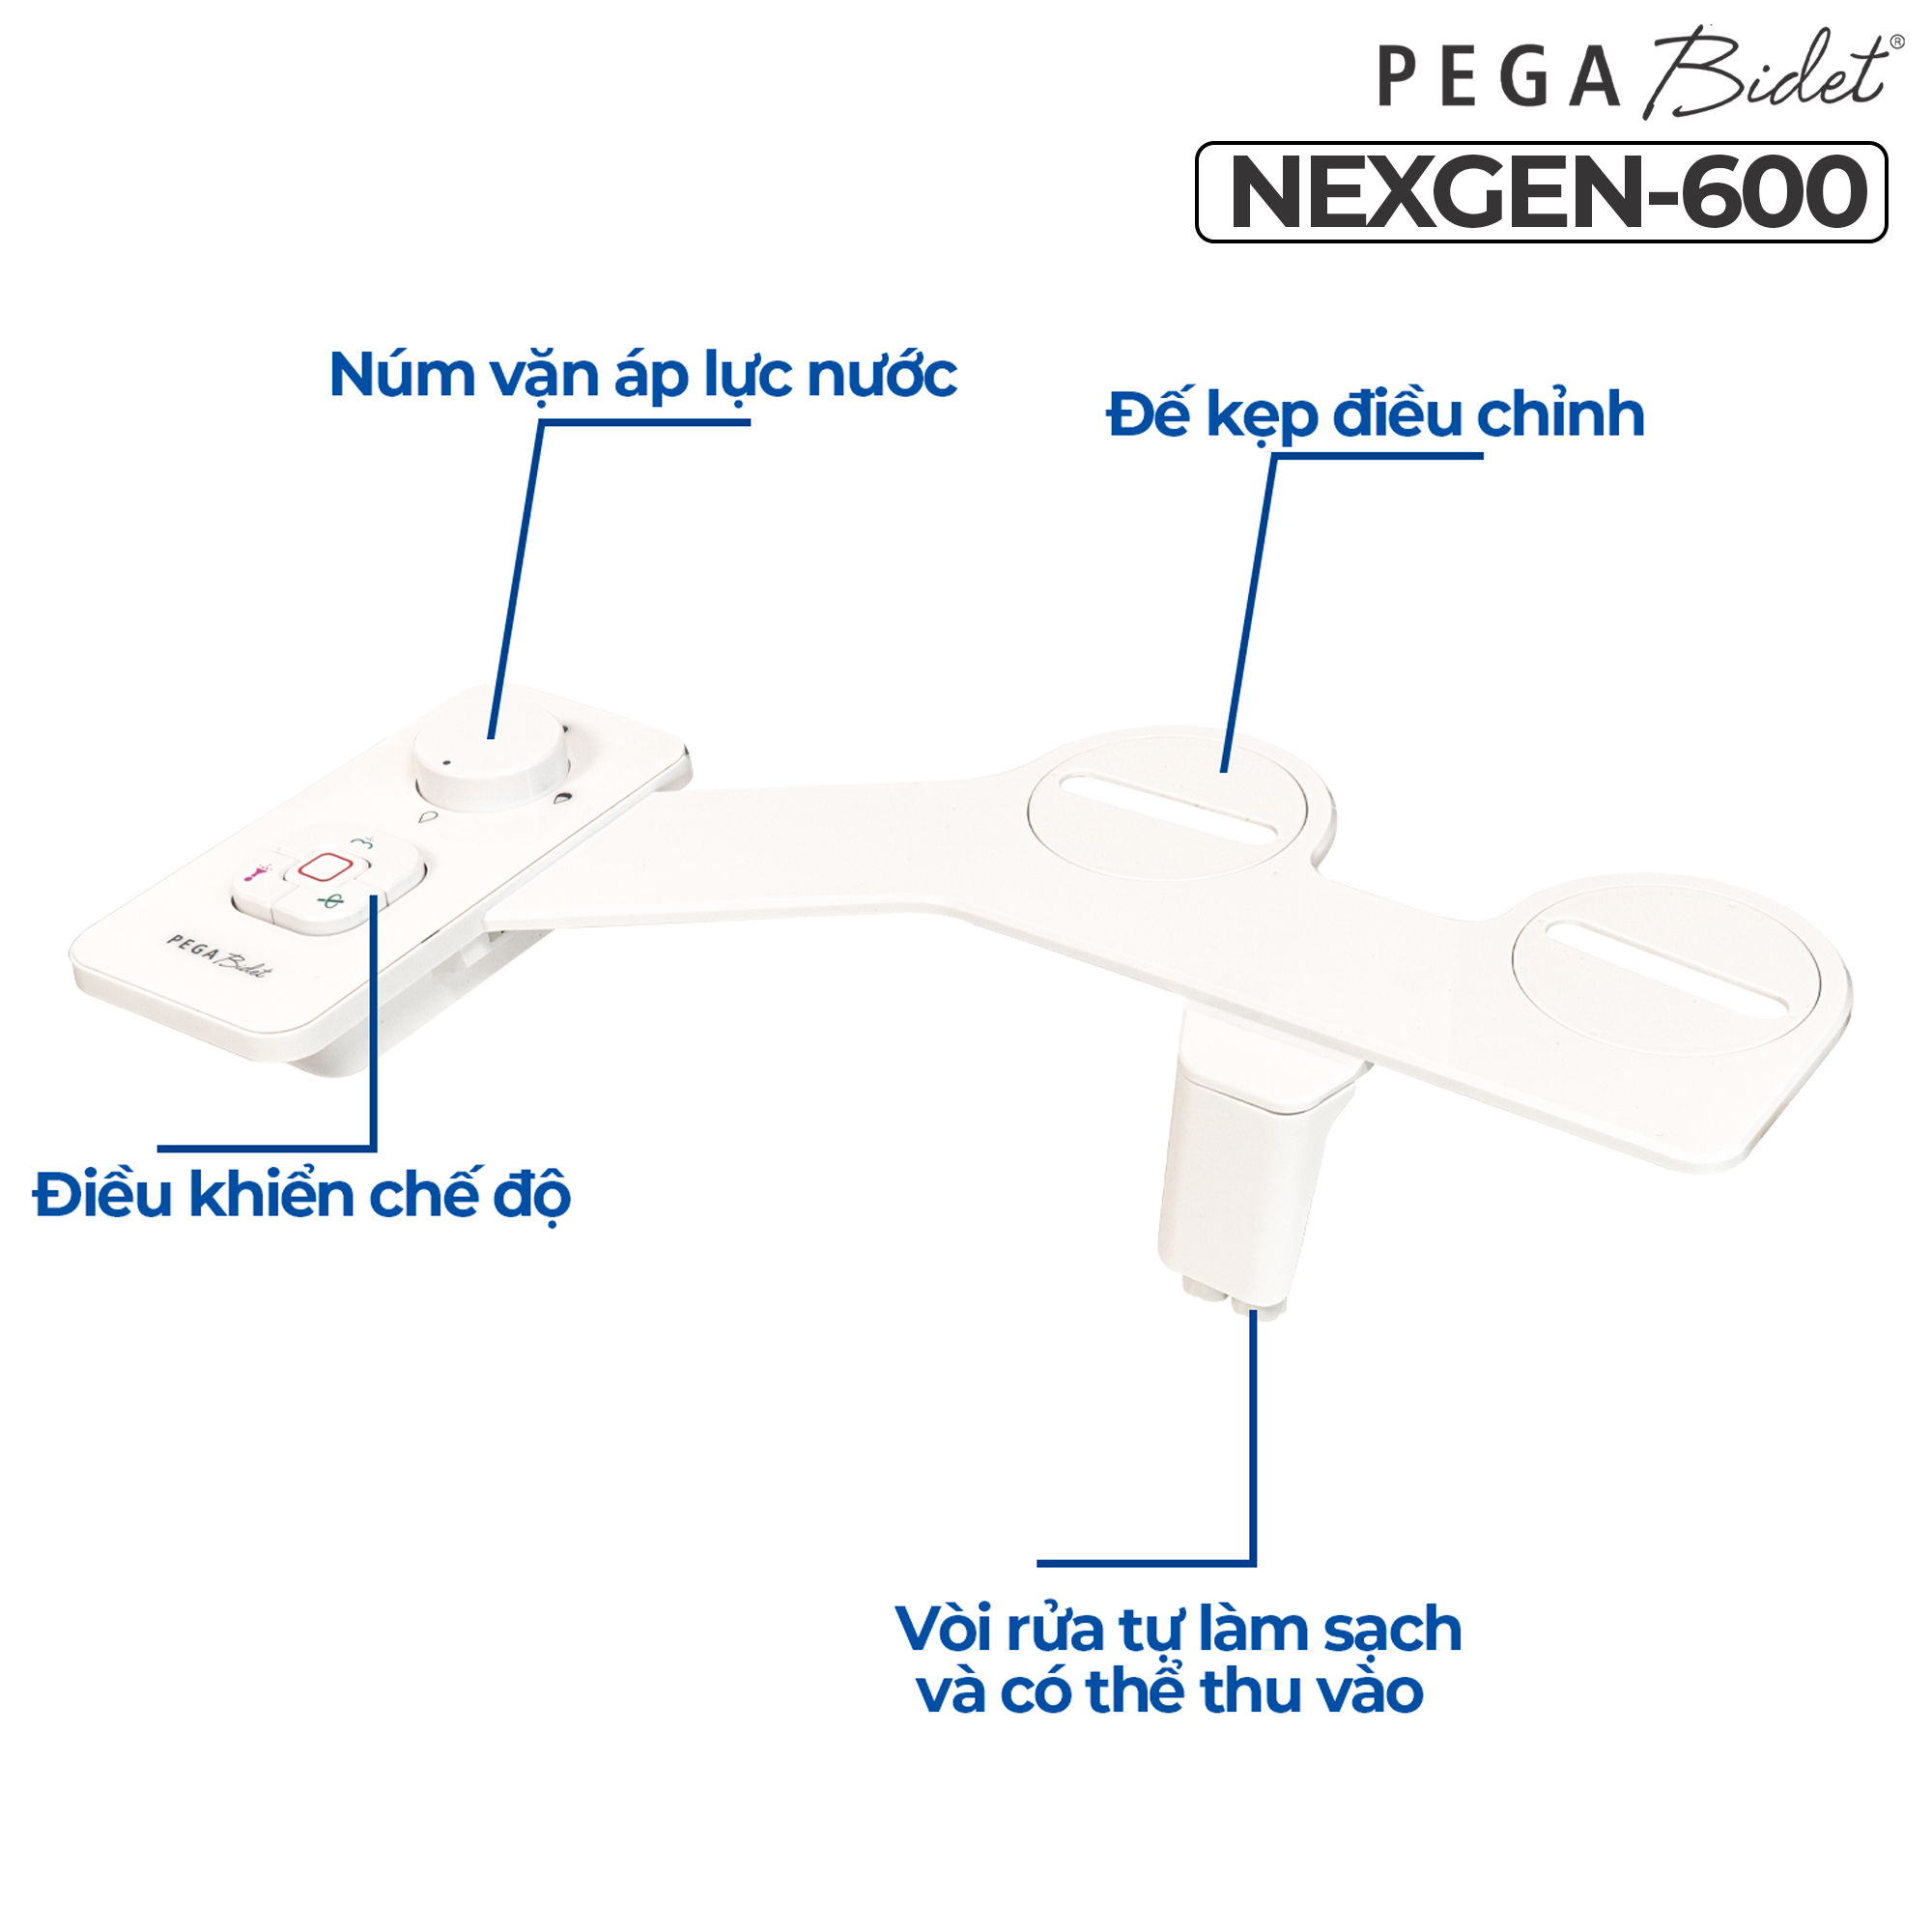 Vòi Xịt Rửa Vệ Sinh Thông Minh PEGA Bidet NEXGEN-600 Thế Hệ Mới, 2 Vòi Rửa Có Chức Năng Chuyên Dụng Cho Nữ, Dễ Lắp Đặt, Rất cần cho Trẻ Em, Người Già và Phụ Nữ Mang Thai - Thương Hiệu Mỹ